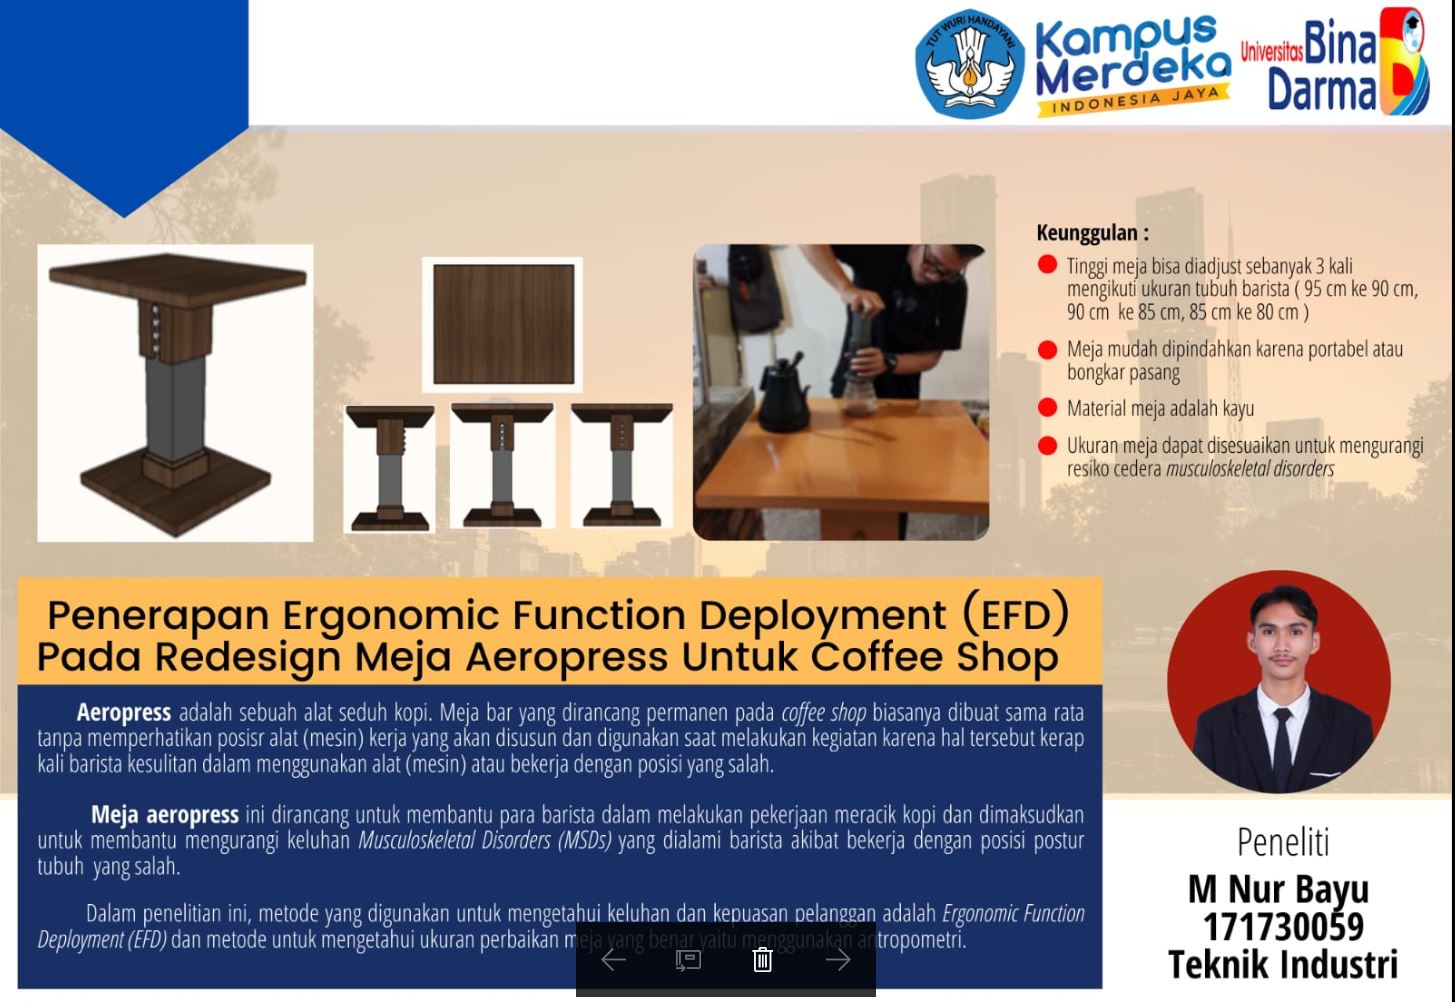 Penerapan Ergonomic Fungtion Deployment (EFD) Pada Redesingn Meja Aeropress Untuk Cofee Shop